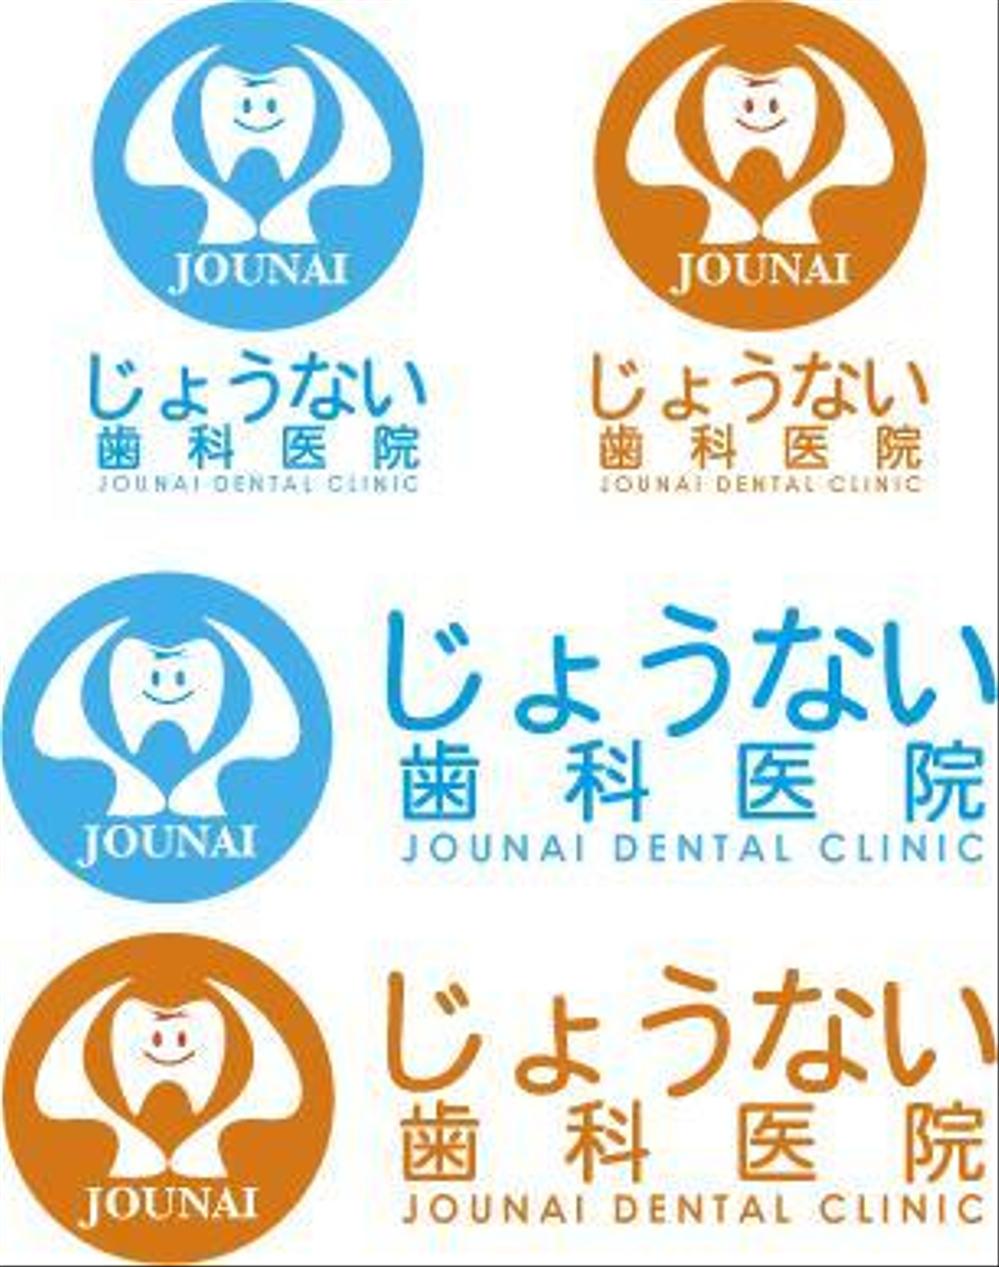 新規開業歯科医院のロゴの製作をお願いします